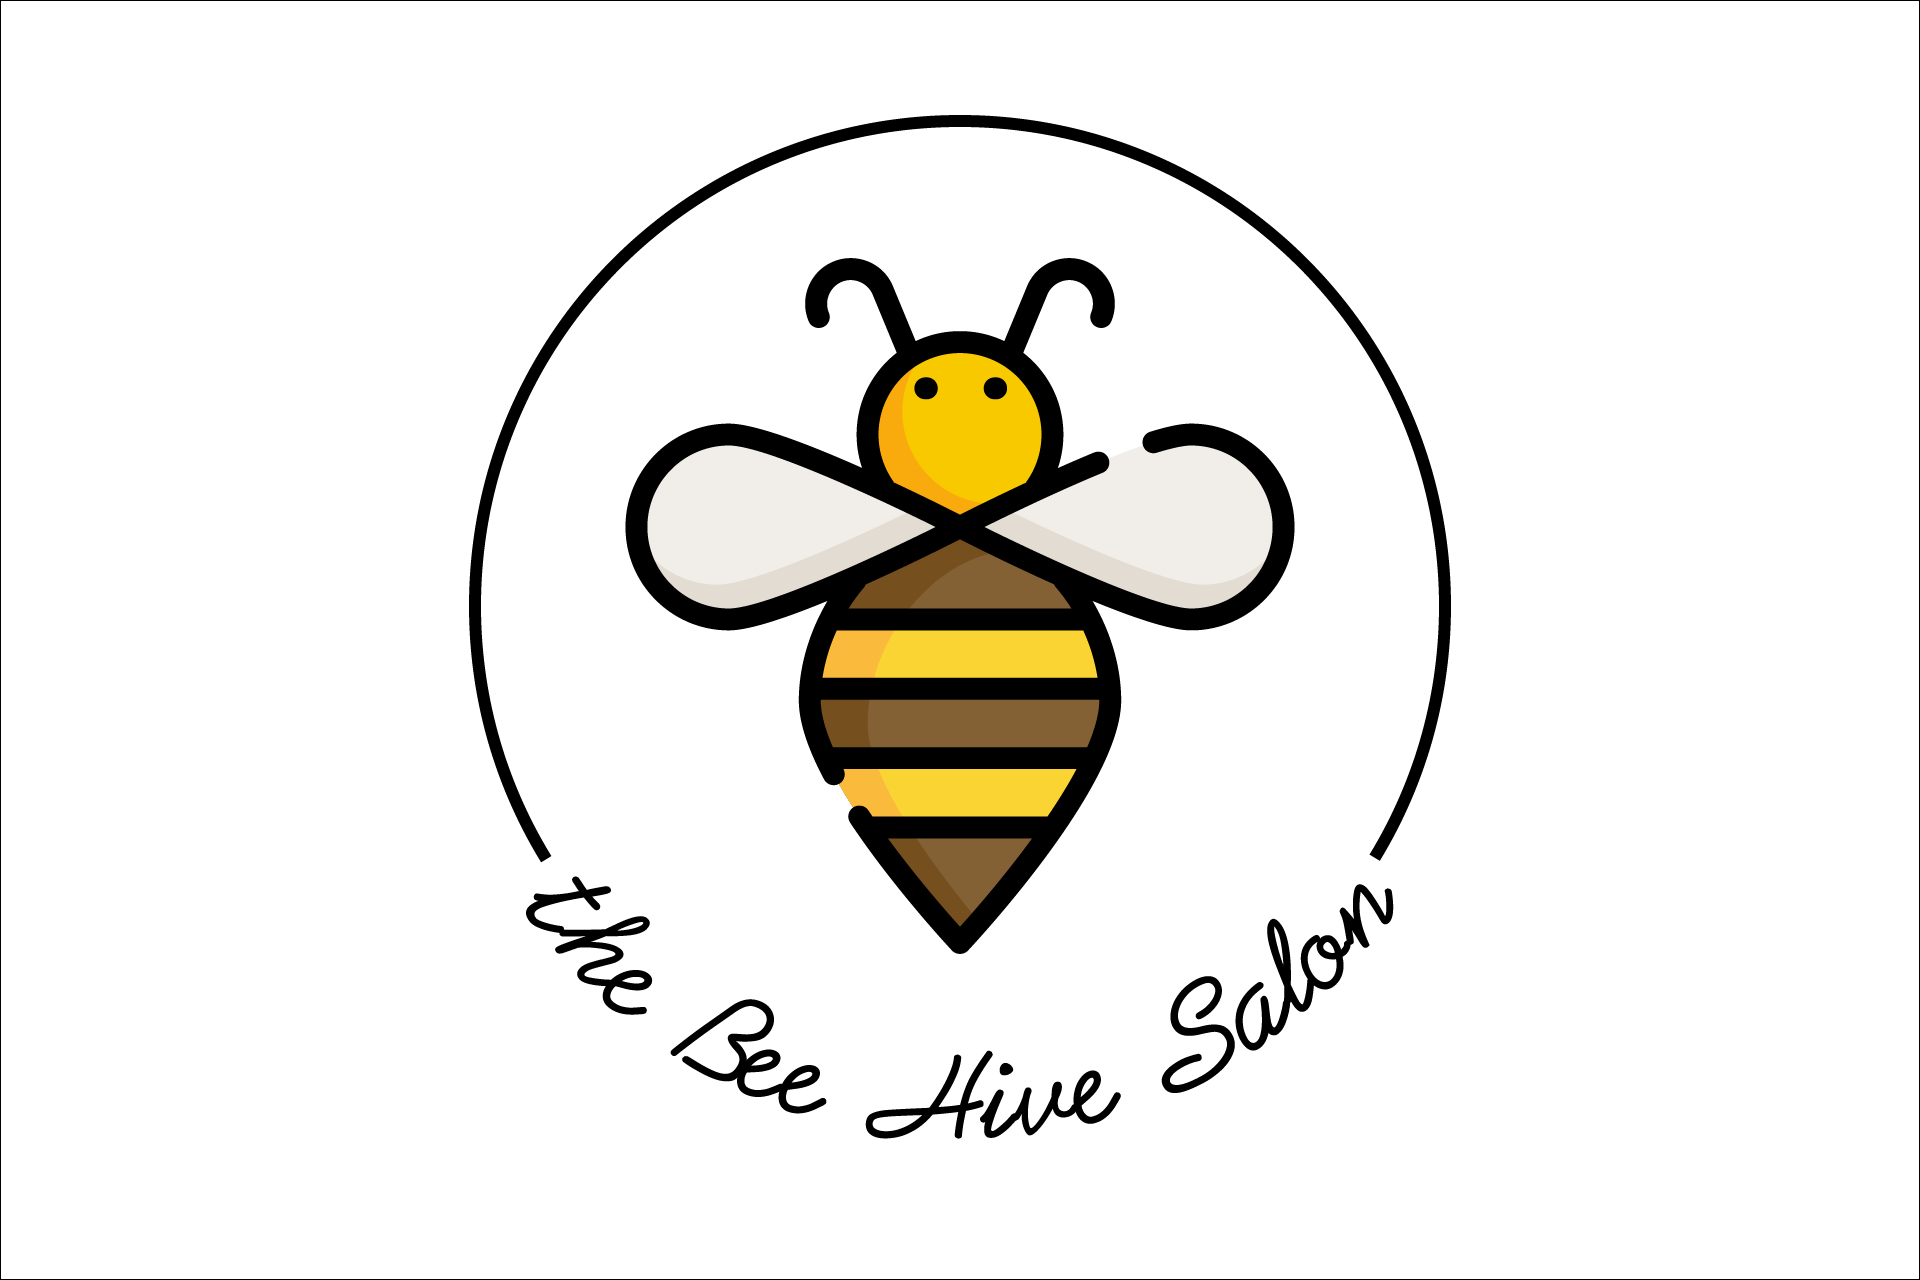 The Bee Hive Salon In De Pere WI | Vagaro